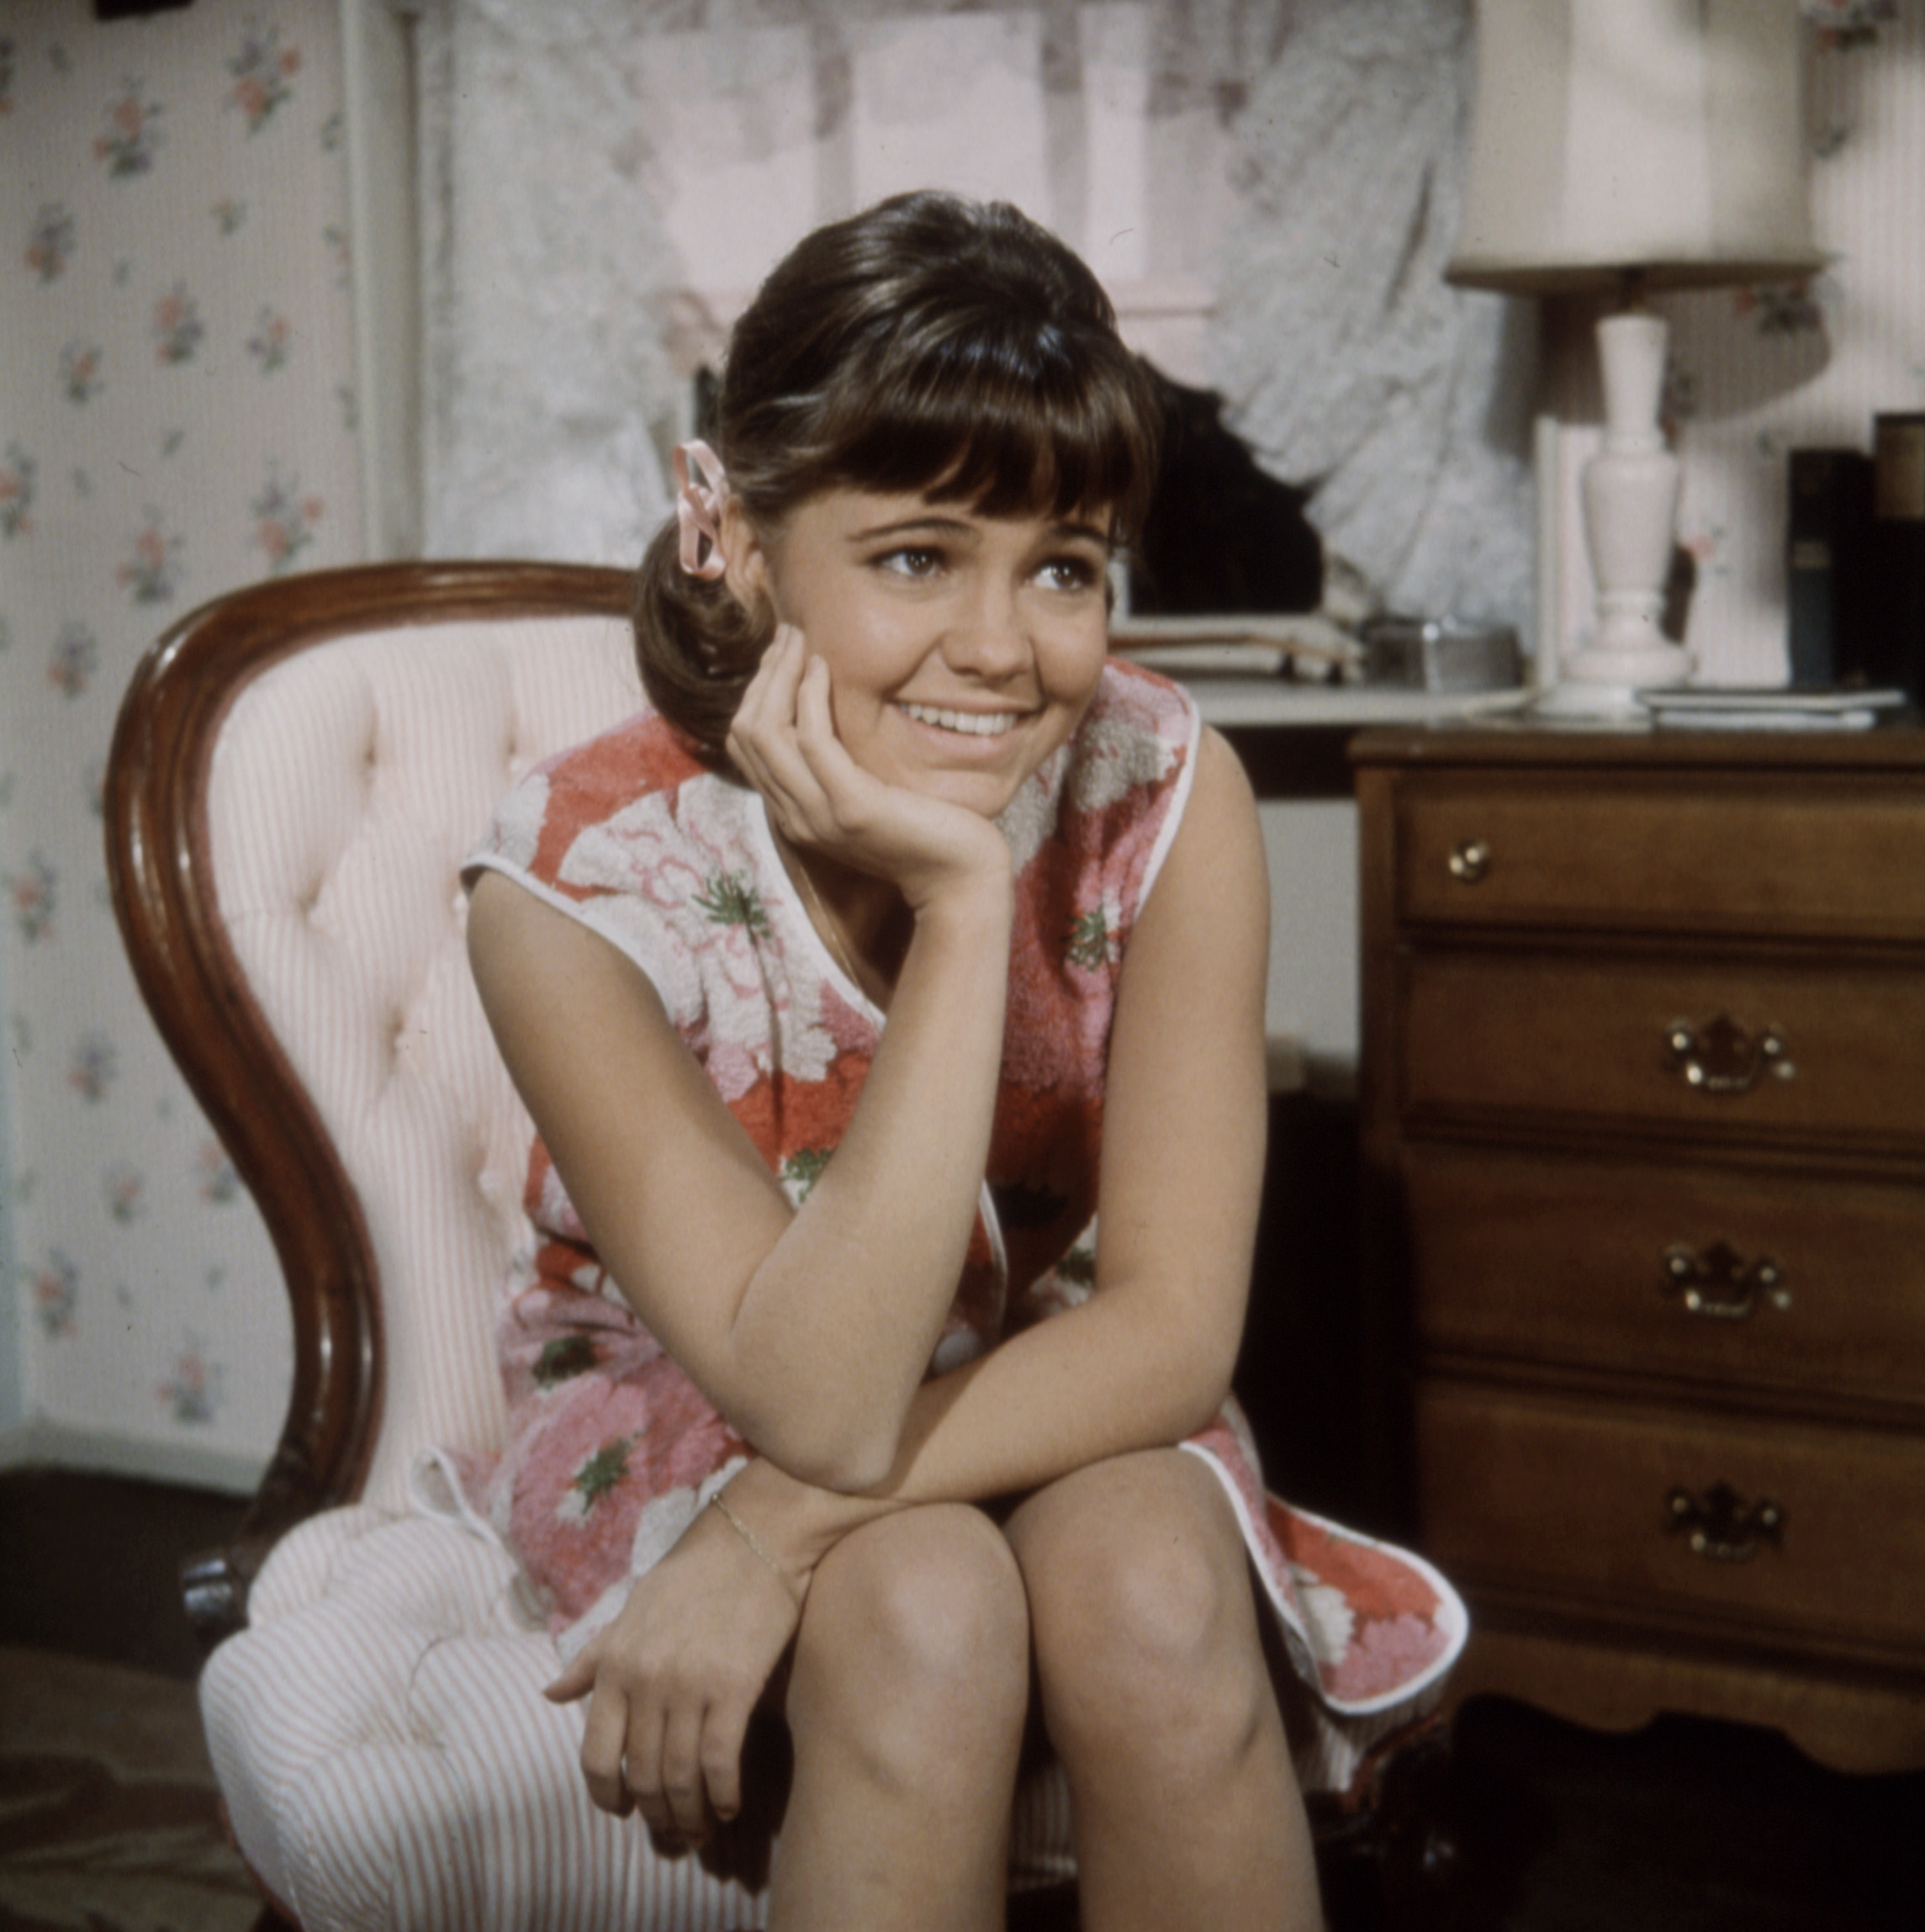 Sally Field als Gidget in der Fernsehserie "Gidget" im Jahr 1965 in Culver City, Kalifornien | Quelle: Getty Images